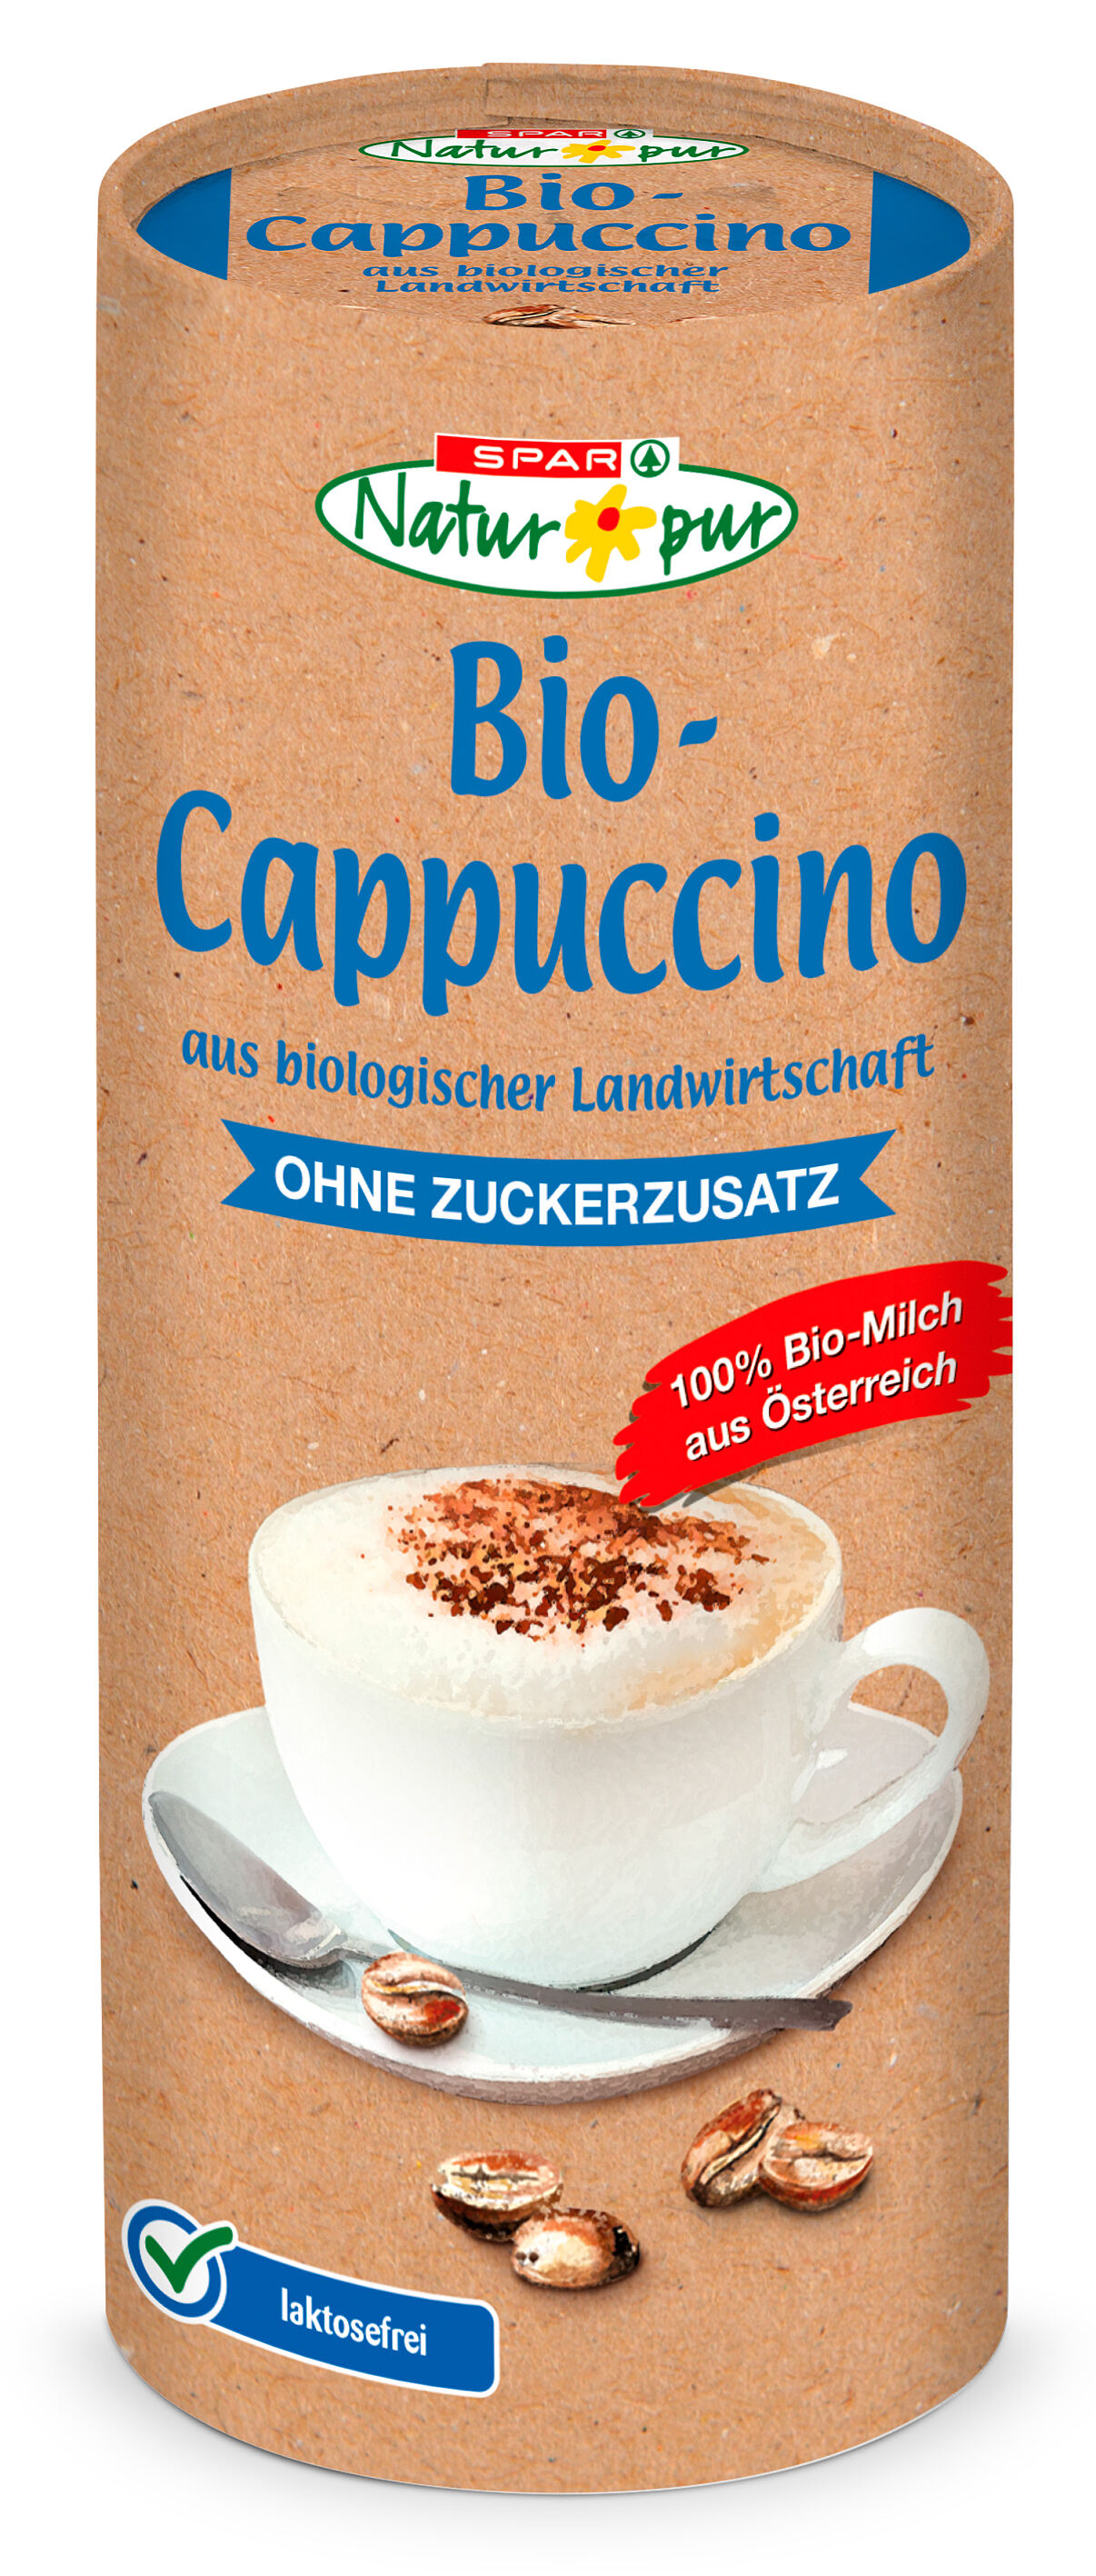 SPAR Natur pur Bio-Cappuccino